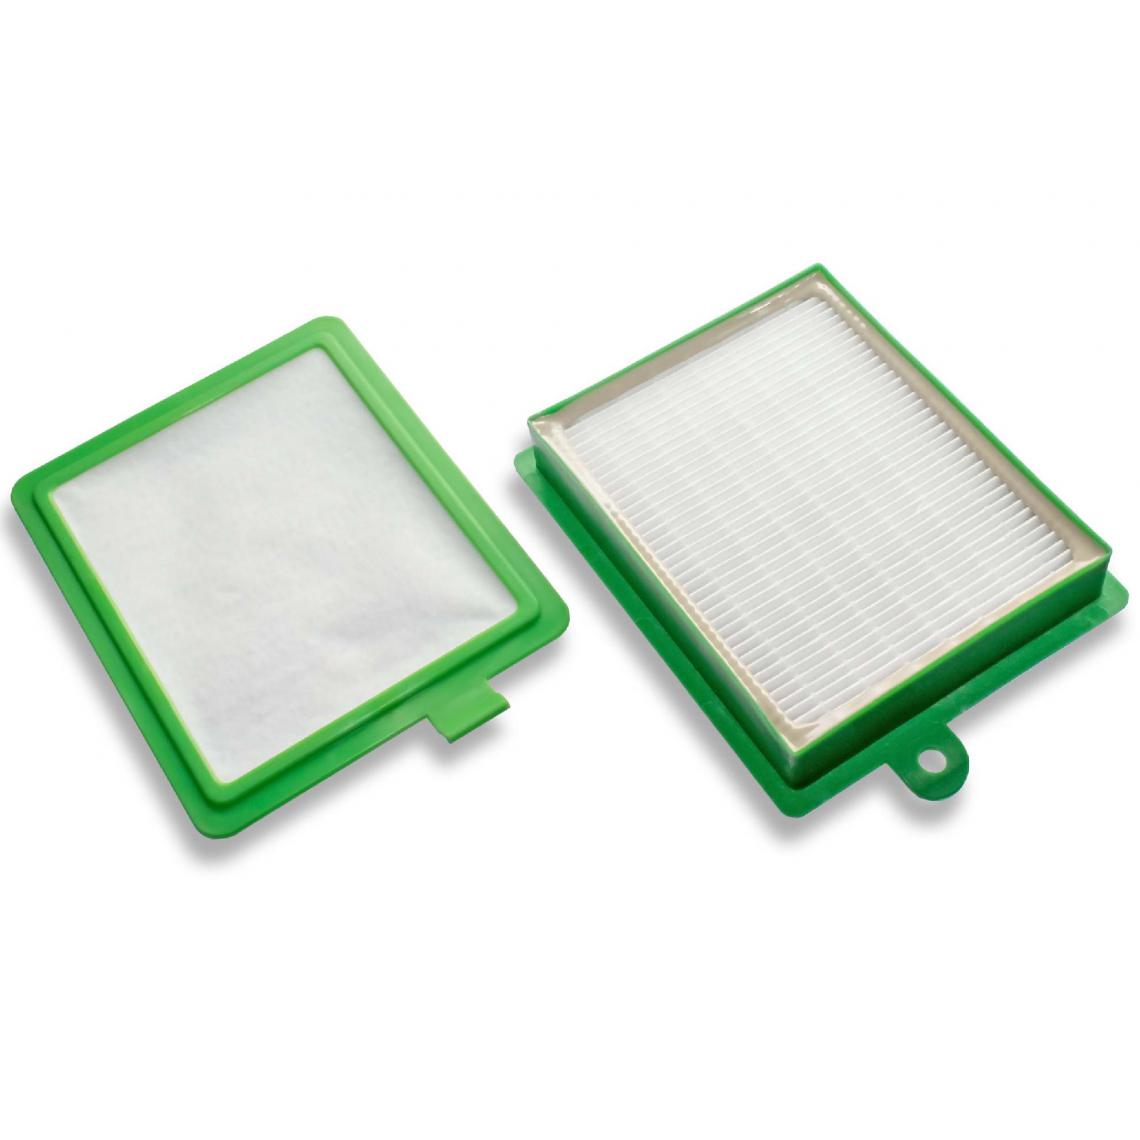 Vhbw - vhbw Lot de filtres compatible avec AEG/Electrolux Ultra Silencer AUS 4030...4045 aspirateur - 2x Filtres de rechange (filtre HEPA, microfiltre) - Accessoire entretien des sols